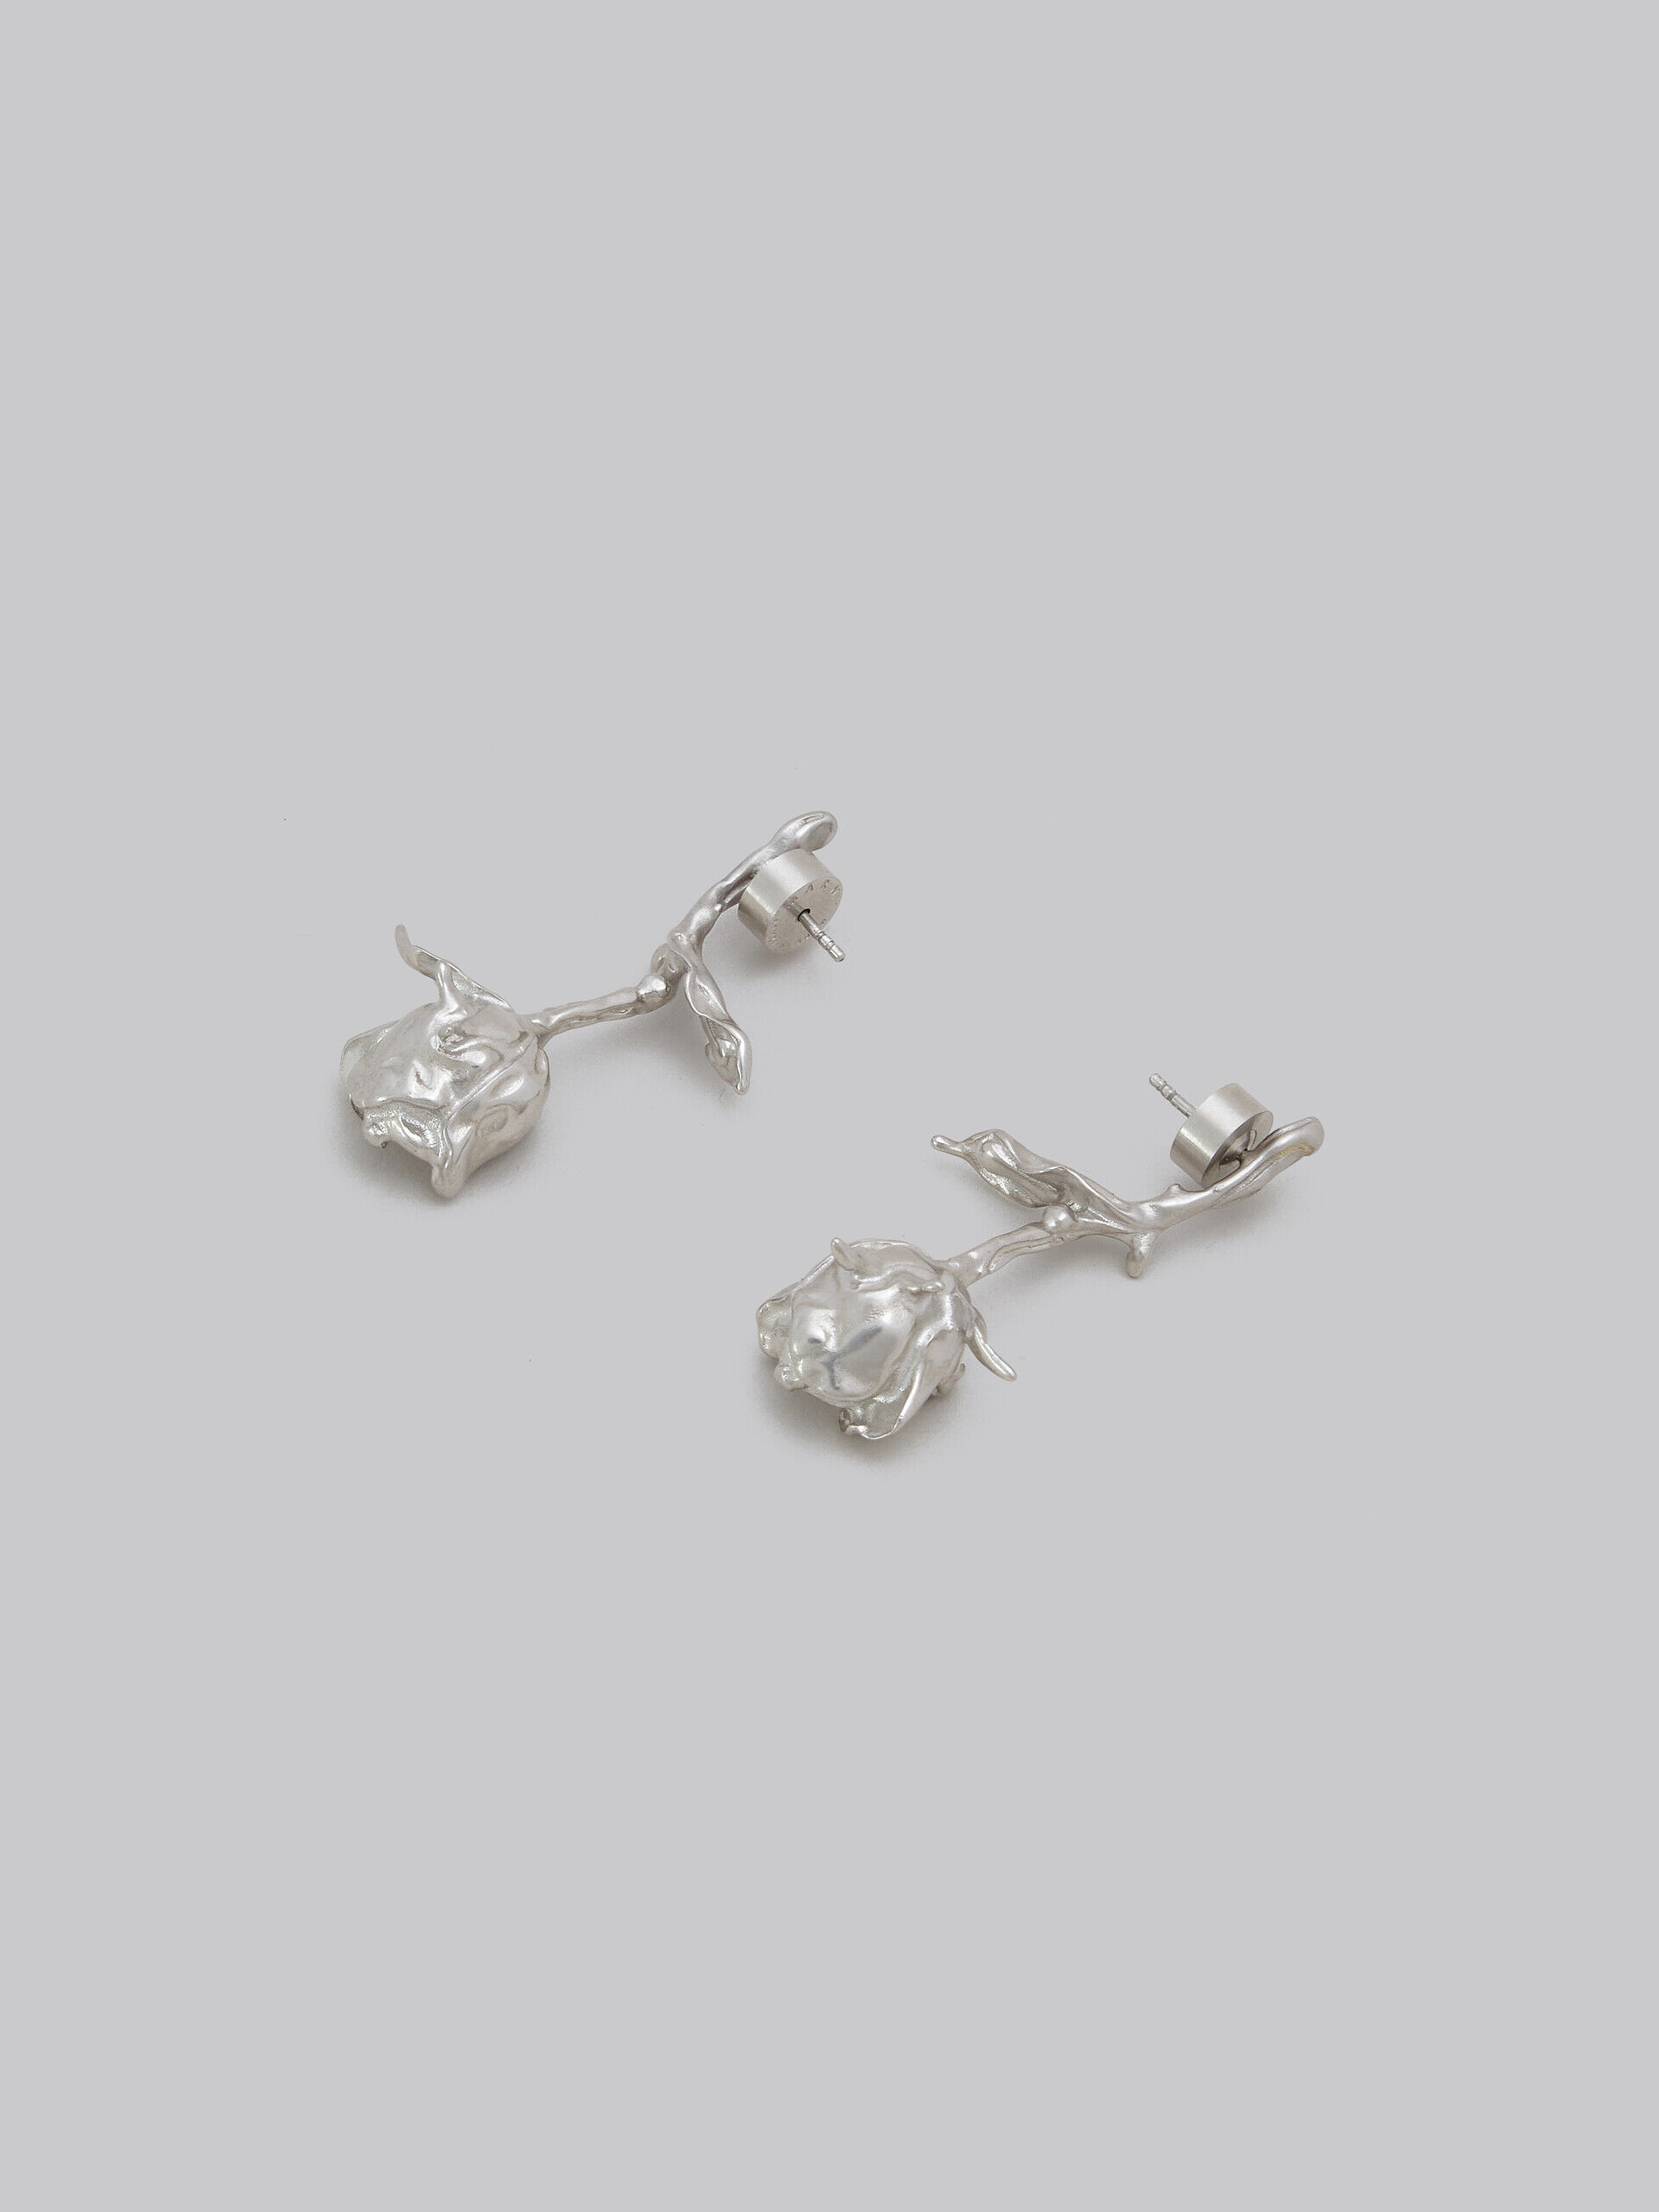 Marni rose drop earrings - Grey